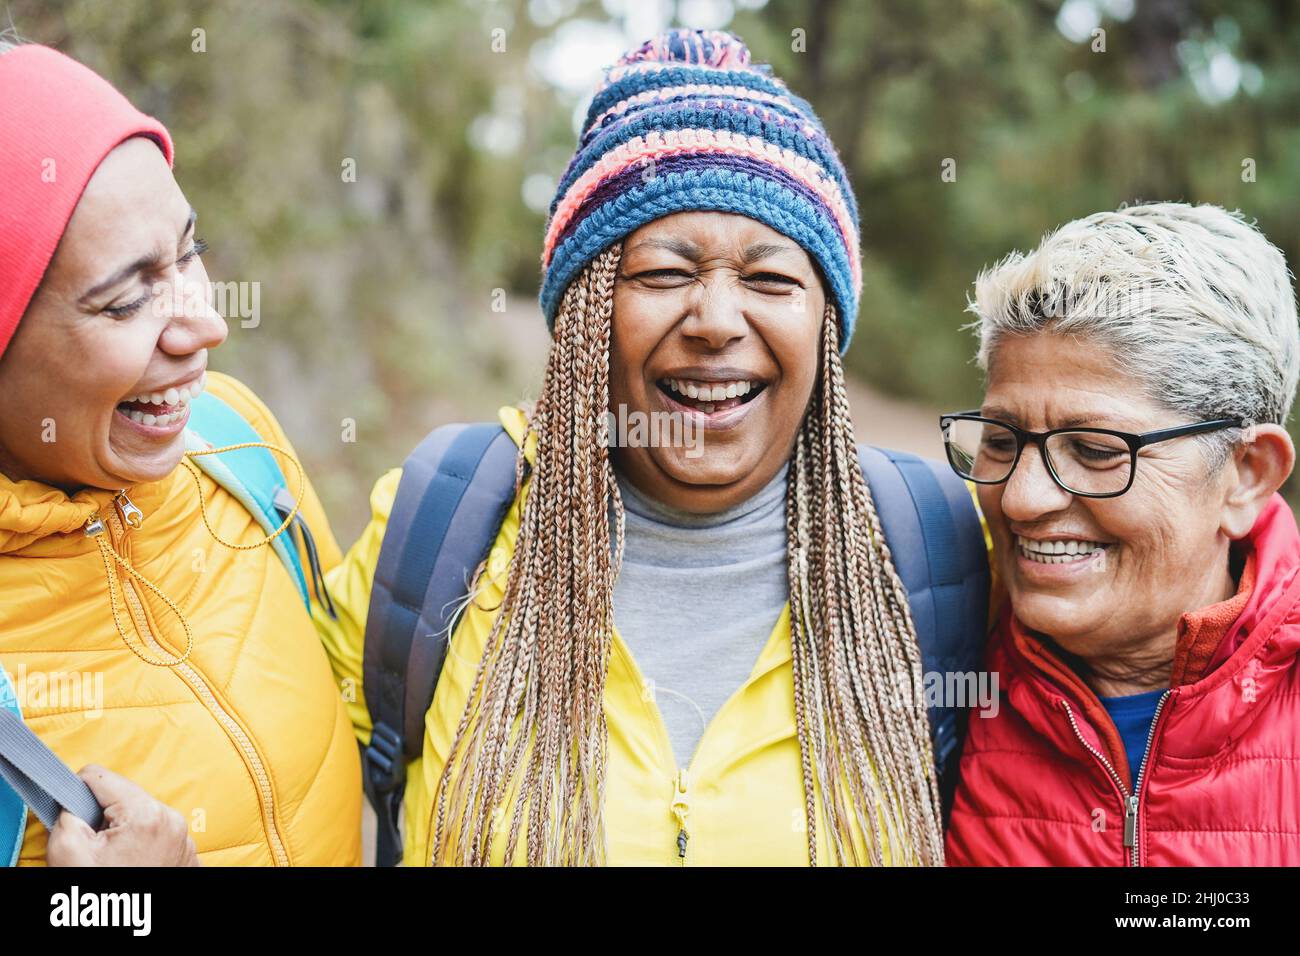 Portrait von multirassischen Freundinnen, die während des Trekkingtages im Bergwald Spaß haben - Fokus auf afrikanisches Frauengesicht Stockfoto